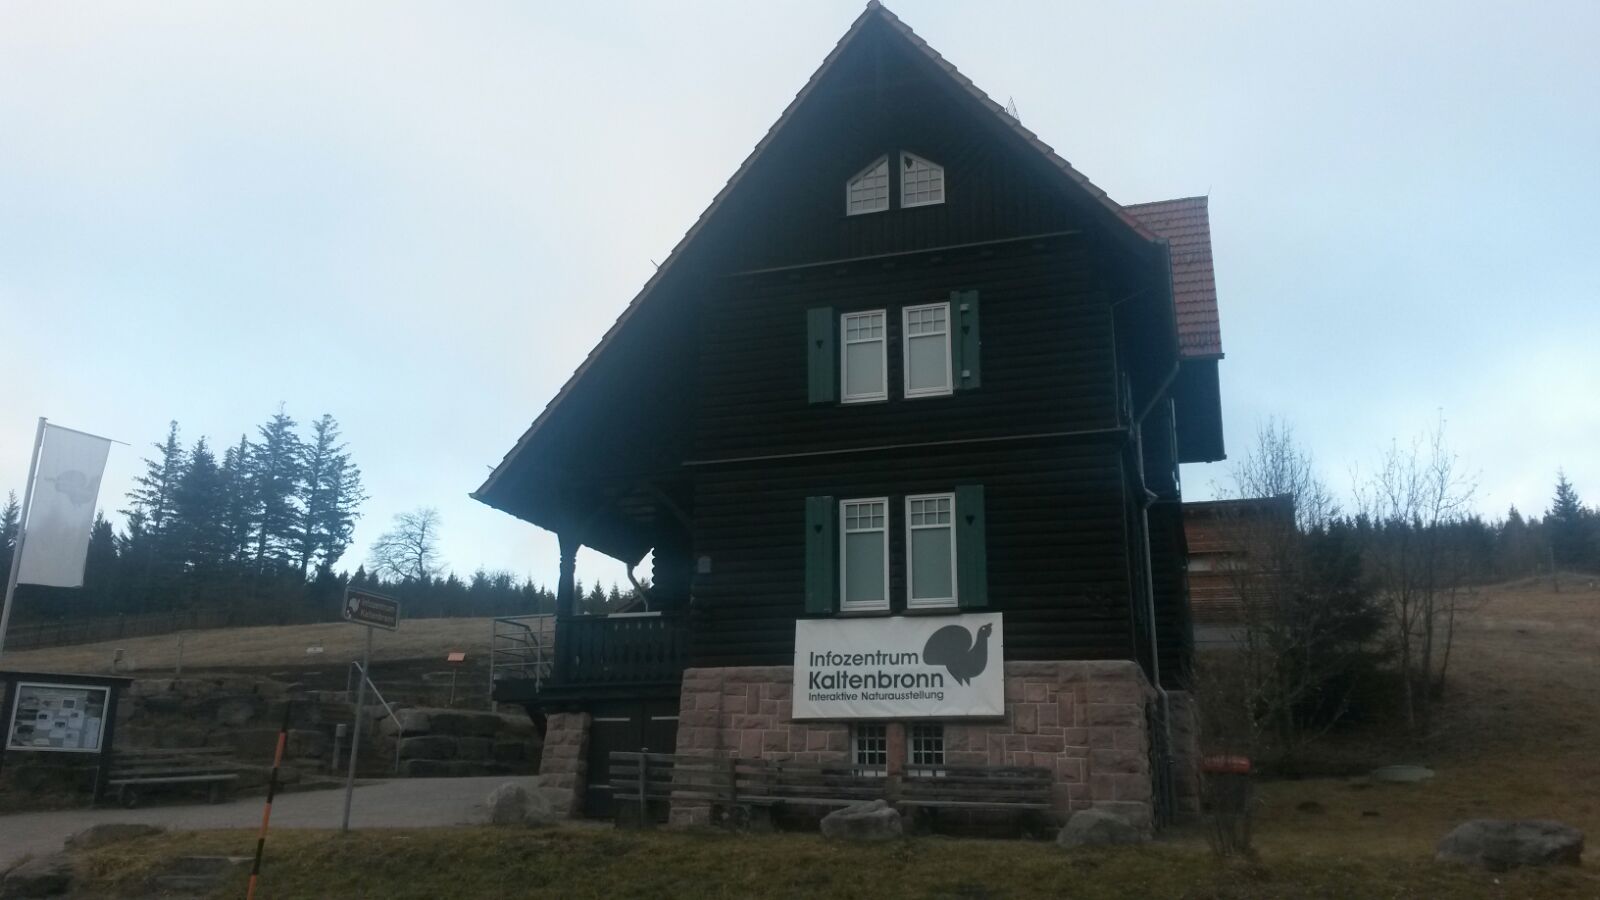 Kaltenbronn Infozentrum i der Nähe vom Wildsee